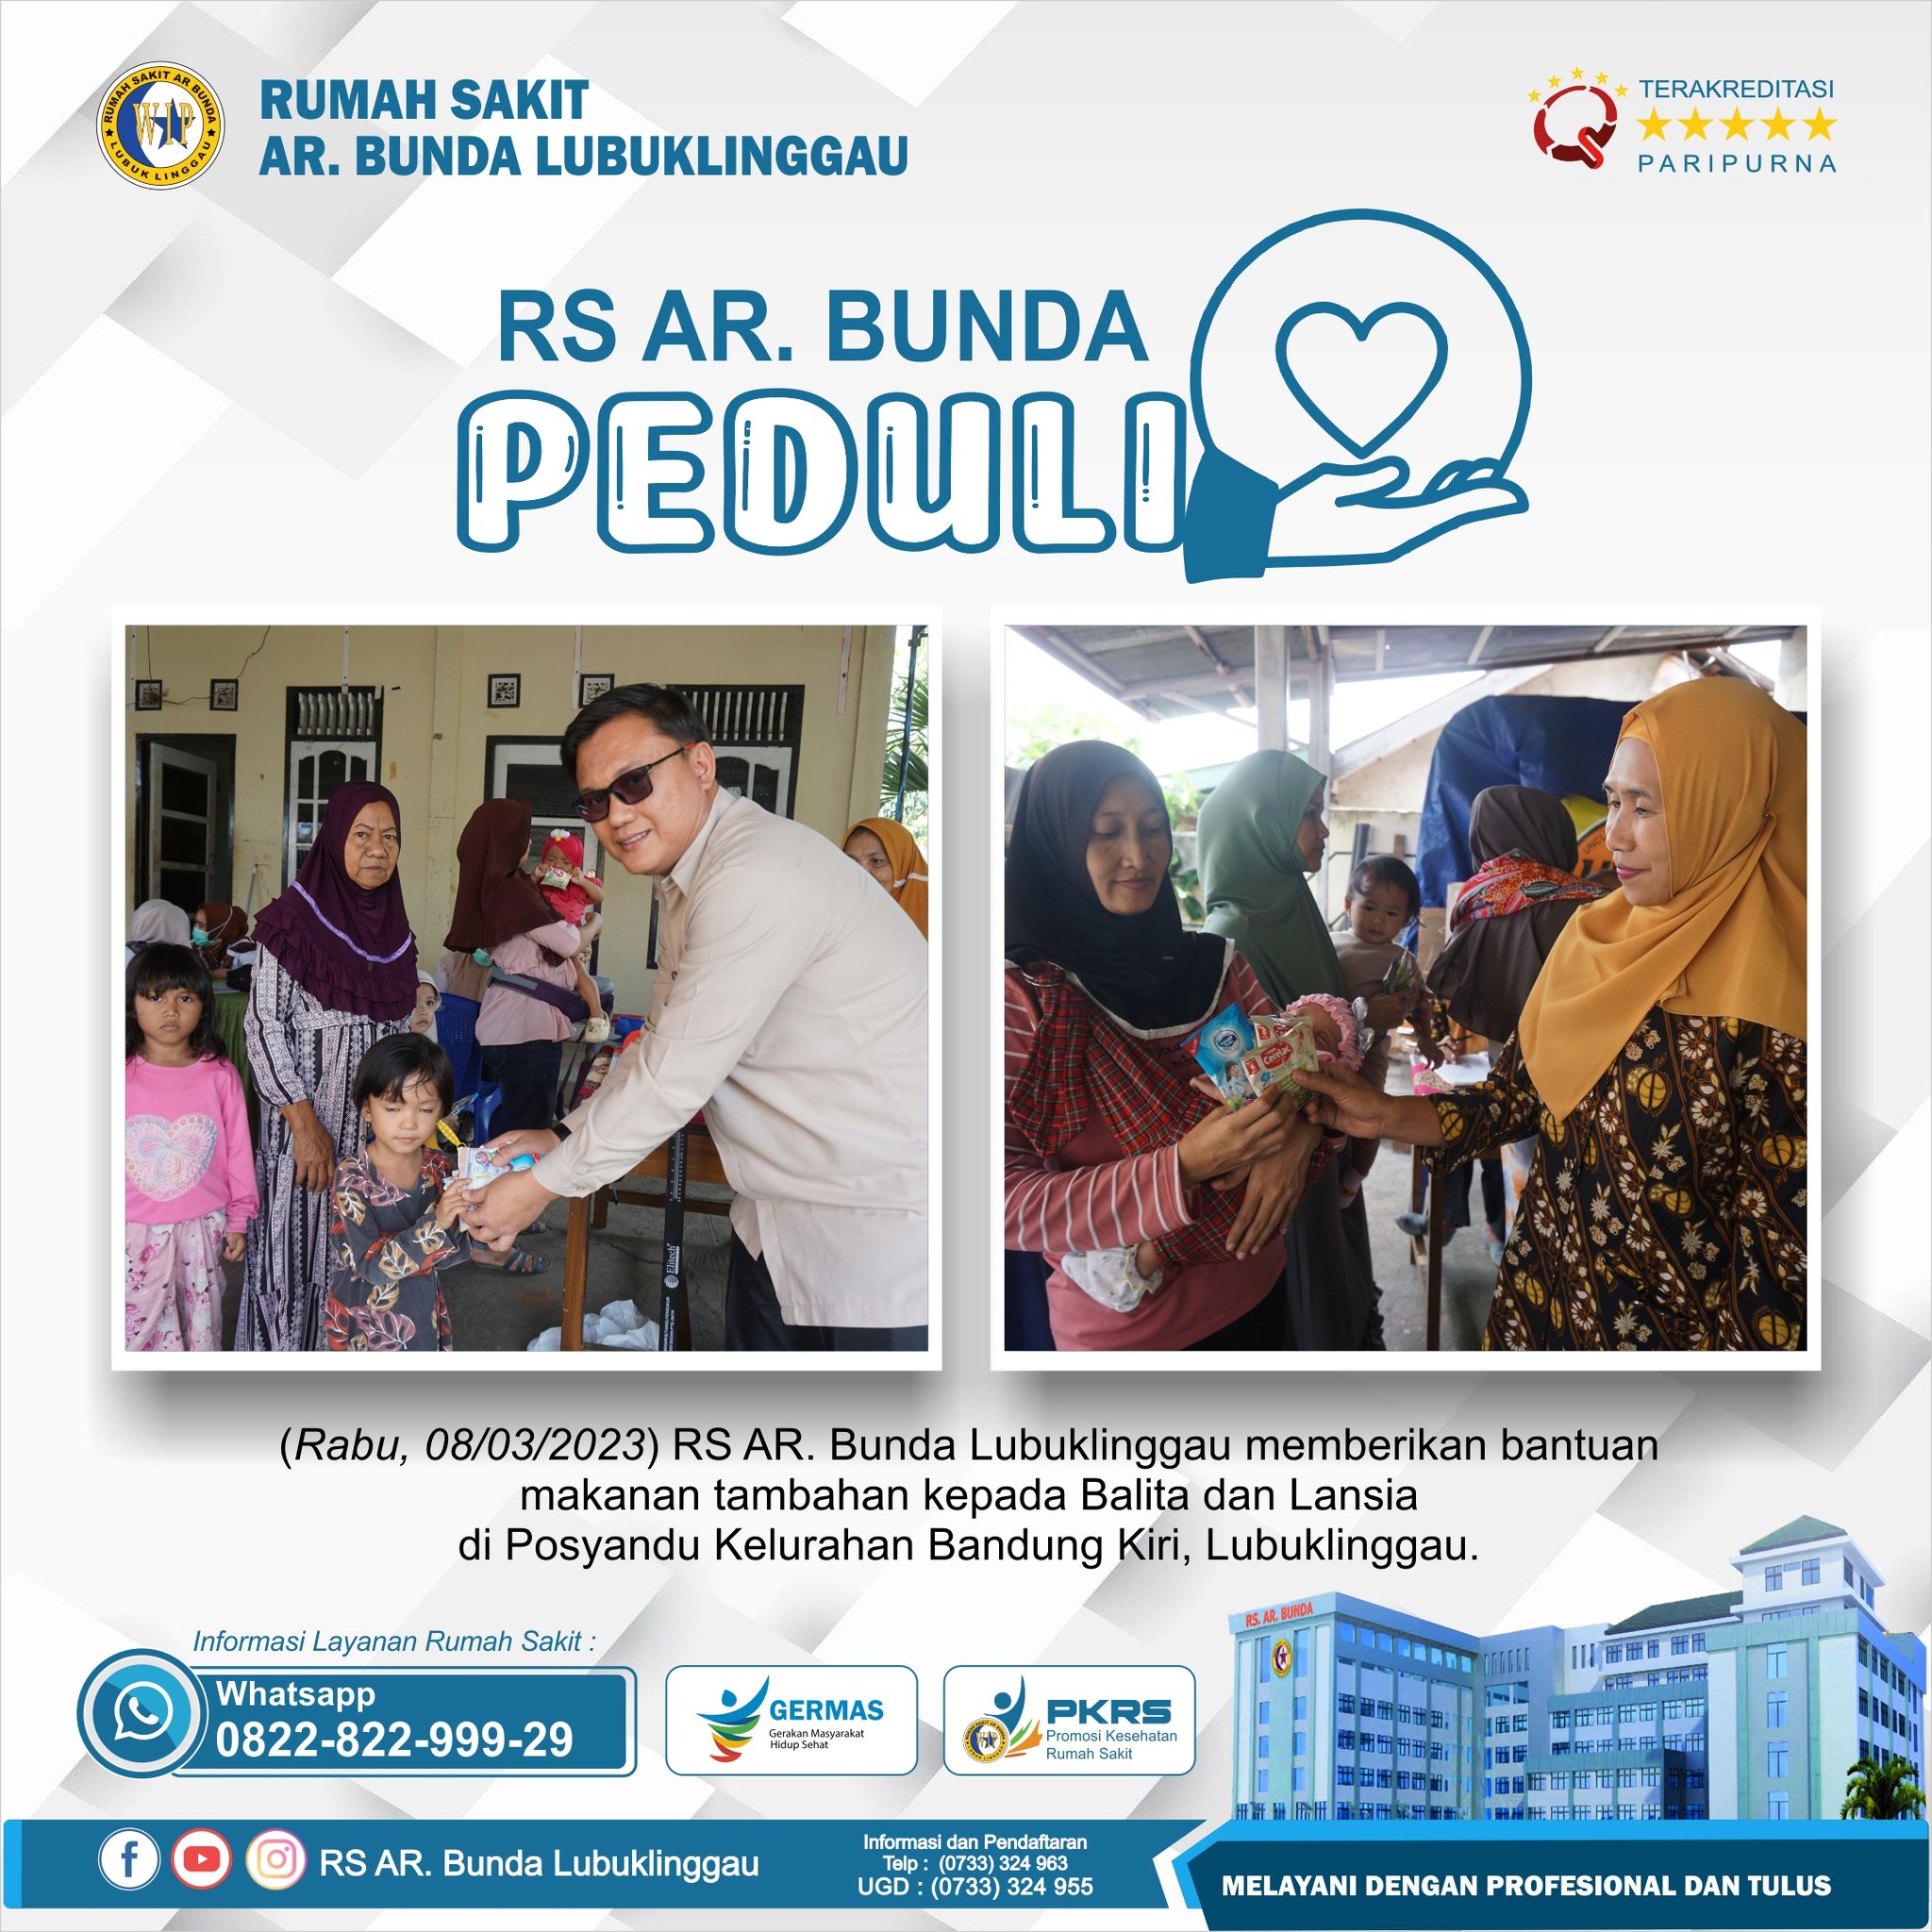 Rumah Sakit AR. Bunda pemberian makanan tambahan di Posyandu Bandung Kiri